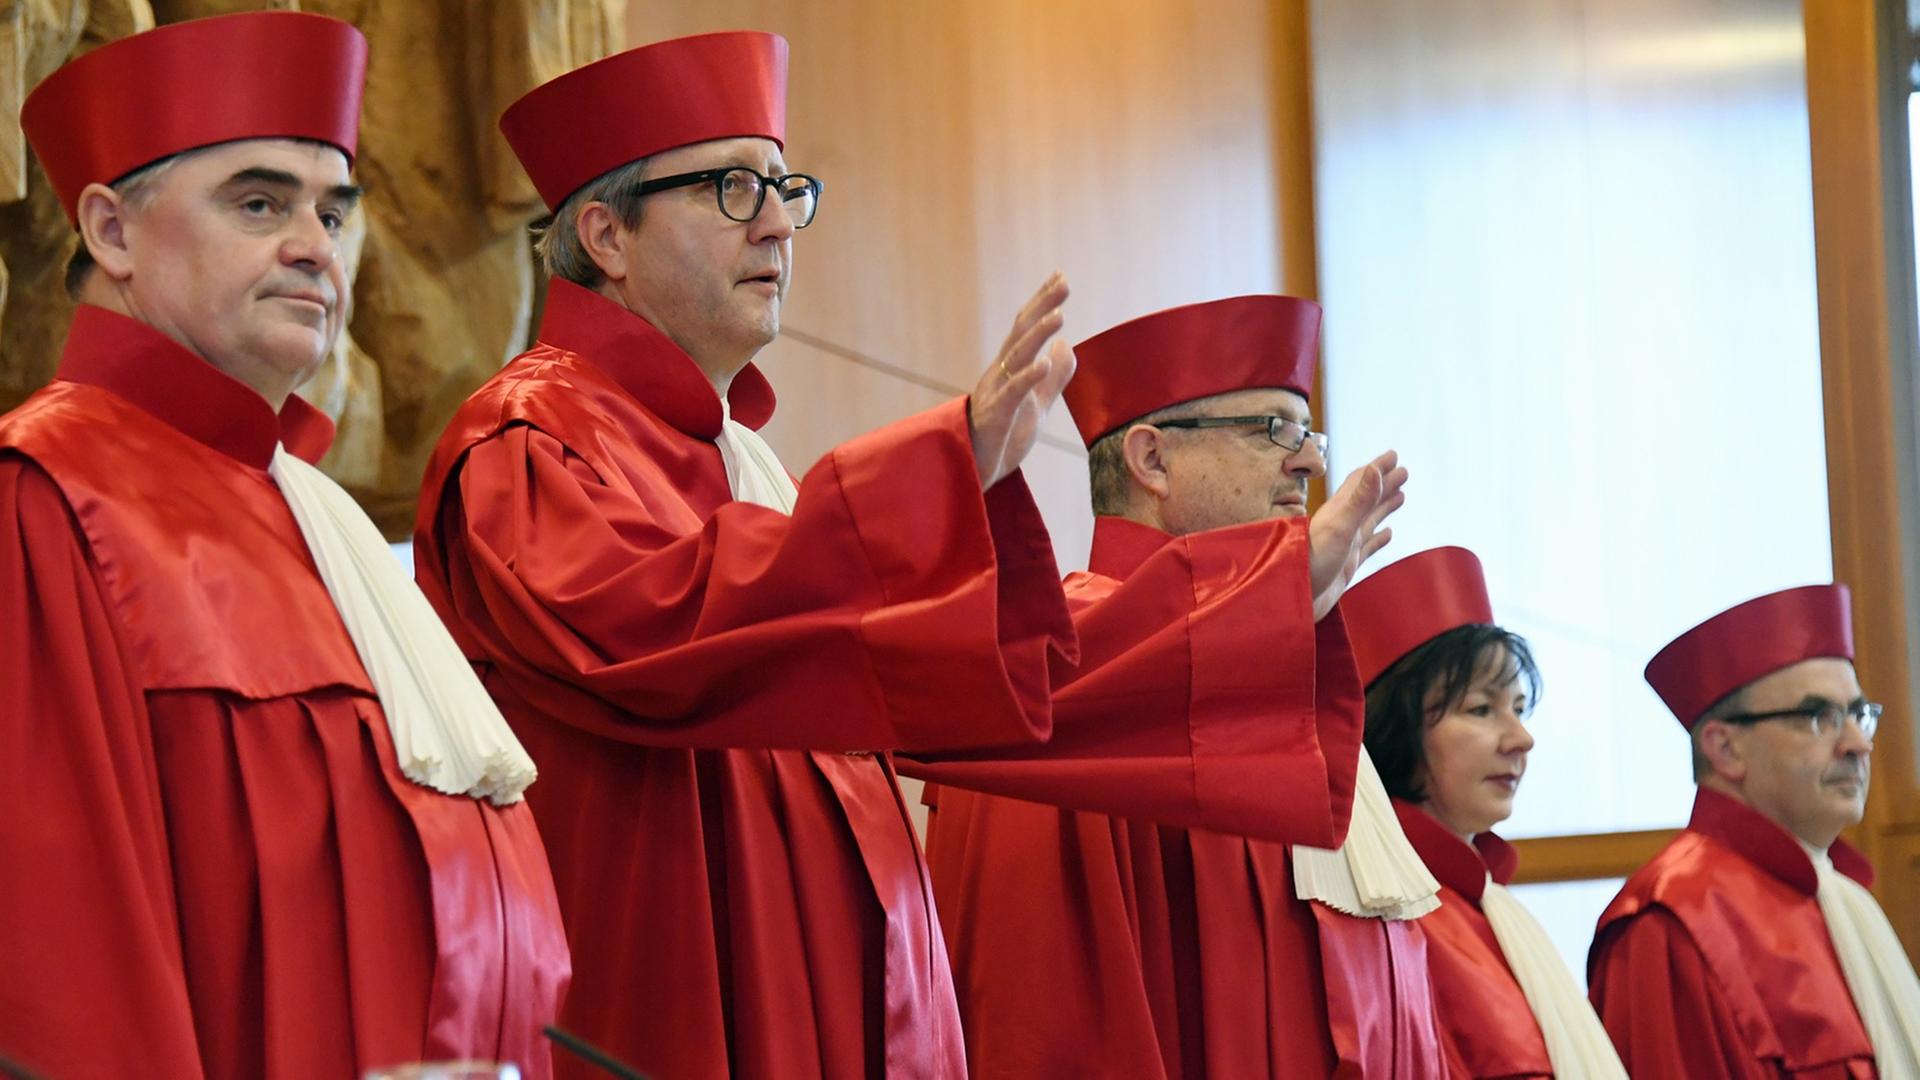 Das Bild zeigt die Richter in roten Roben nebeneinander stehen.